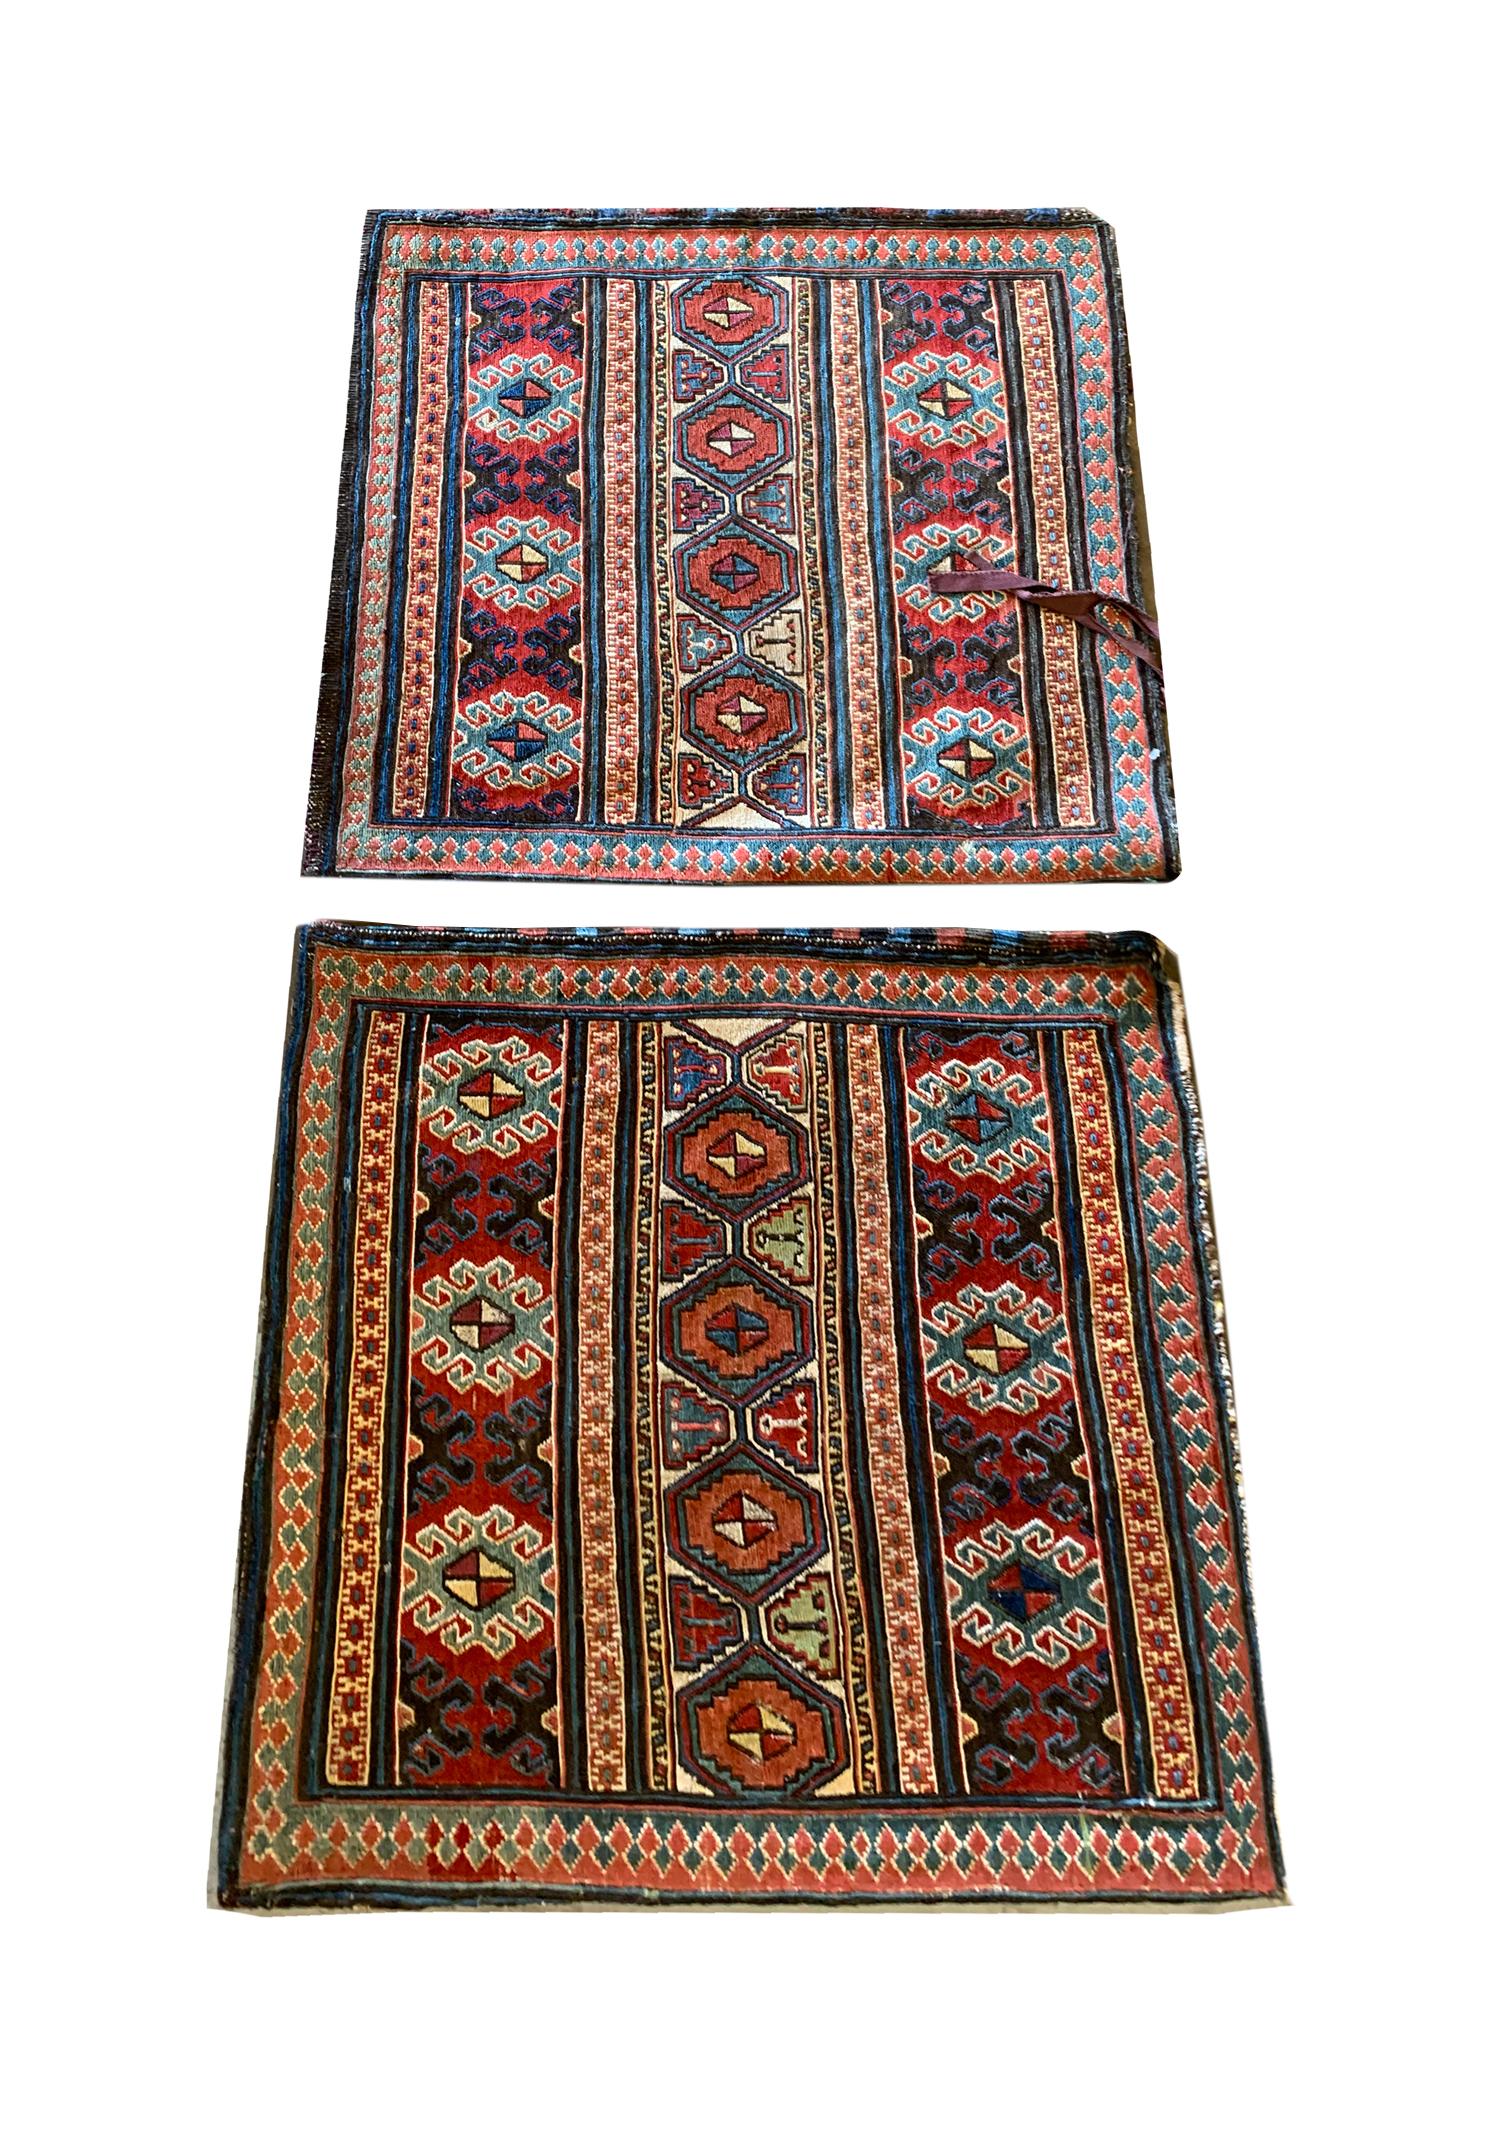 Diese handgewebten Kelim-Teppiche sind antike Stücke, die in den 1880er Jahren im aserbaidschanischen Moghan-Gebiet gewebt wurden. Das Design besteht aus einem dekorativen Streifenmuster, das mit verschlungenen Medaillons gewebt ist. In den Farben